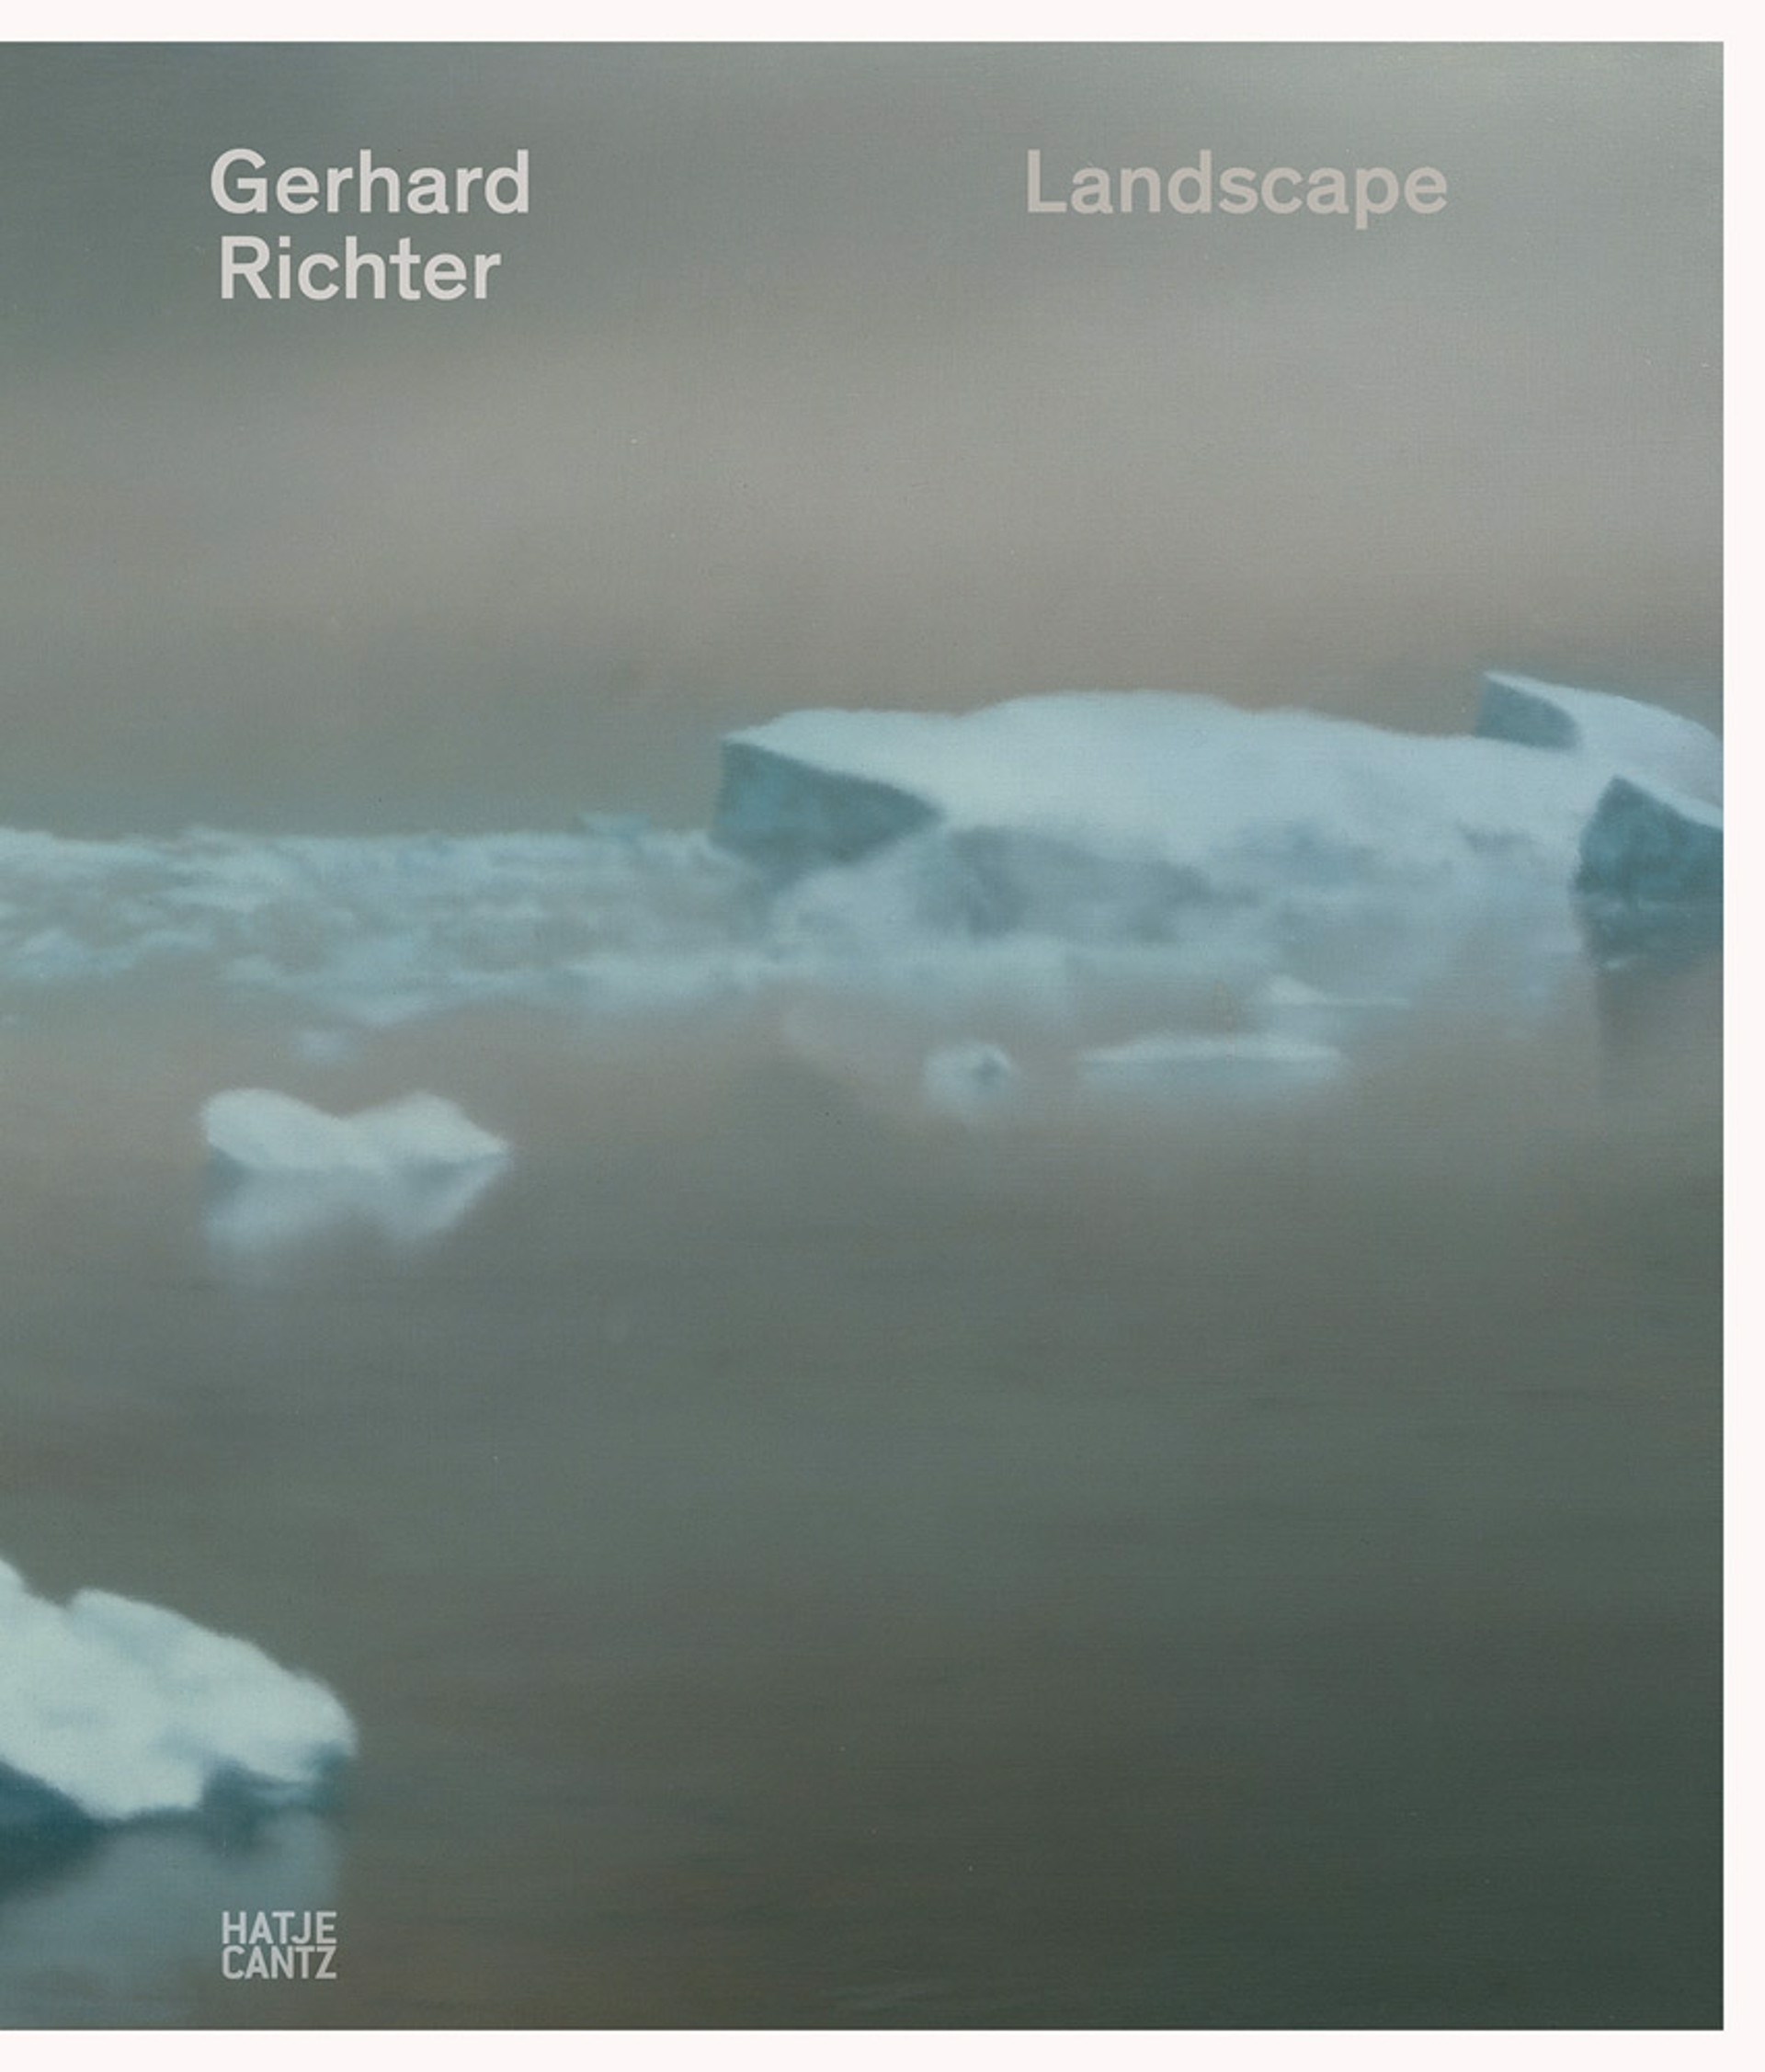 Landscape by Gerhard Richter